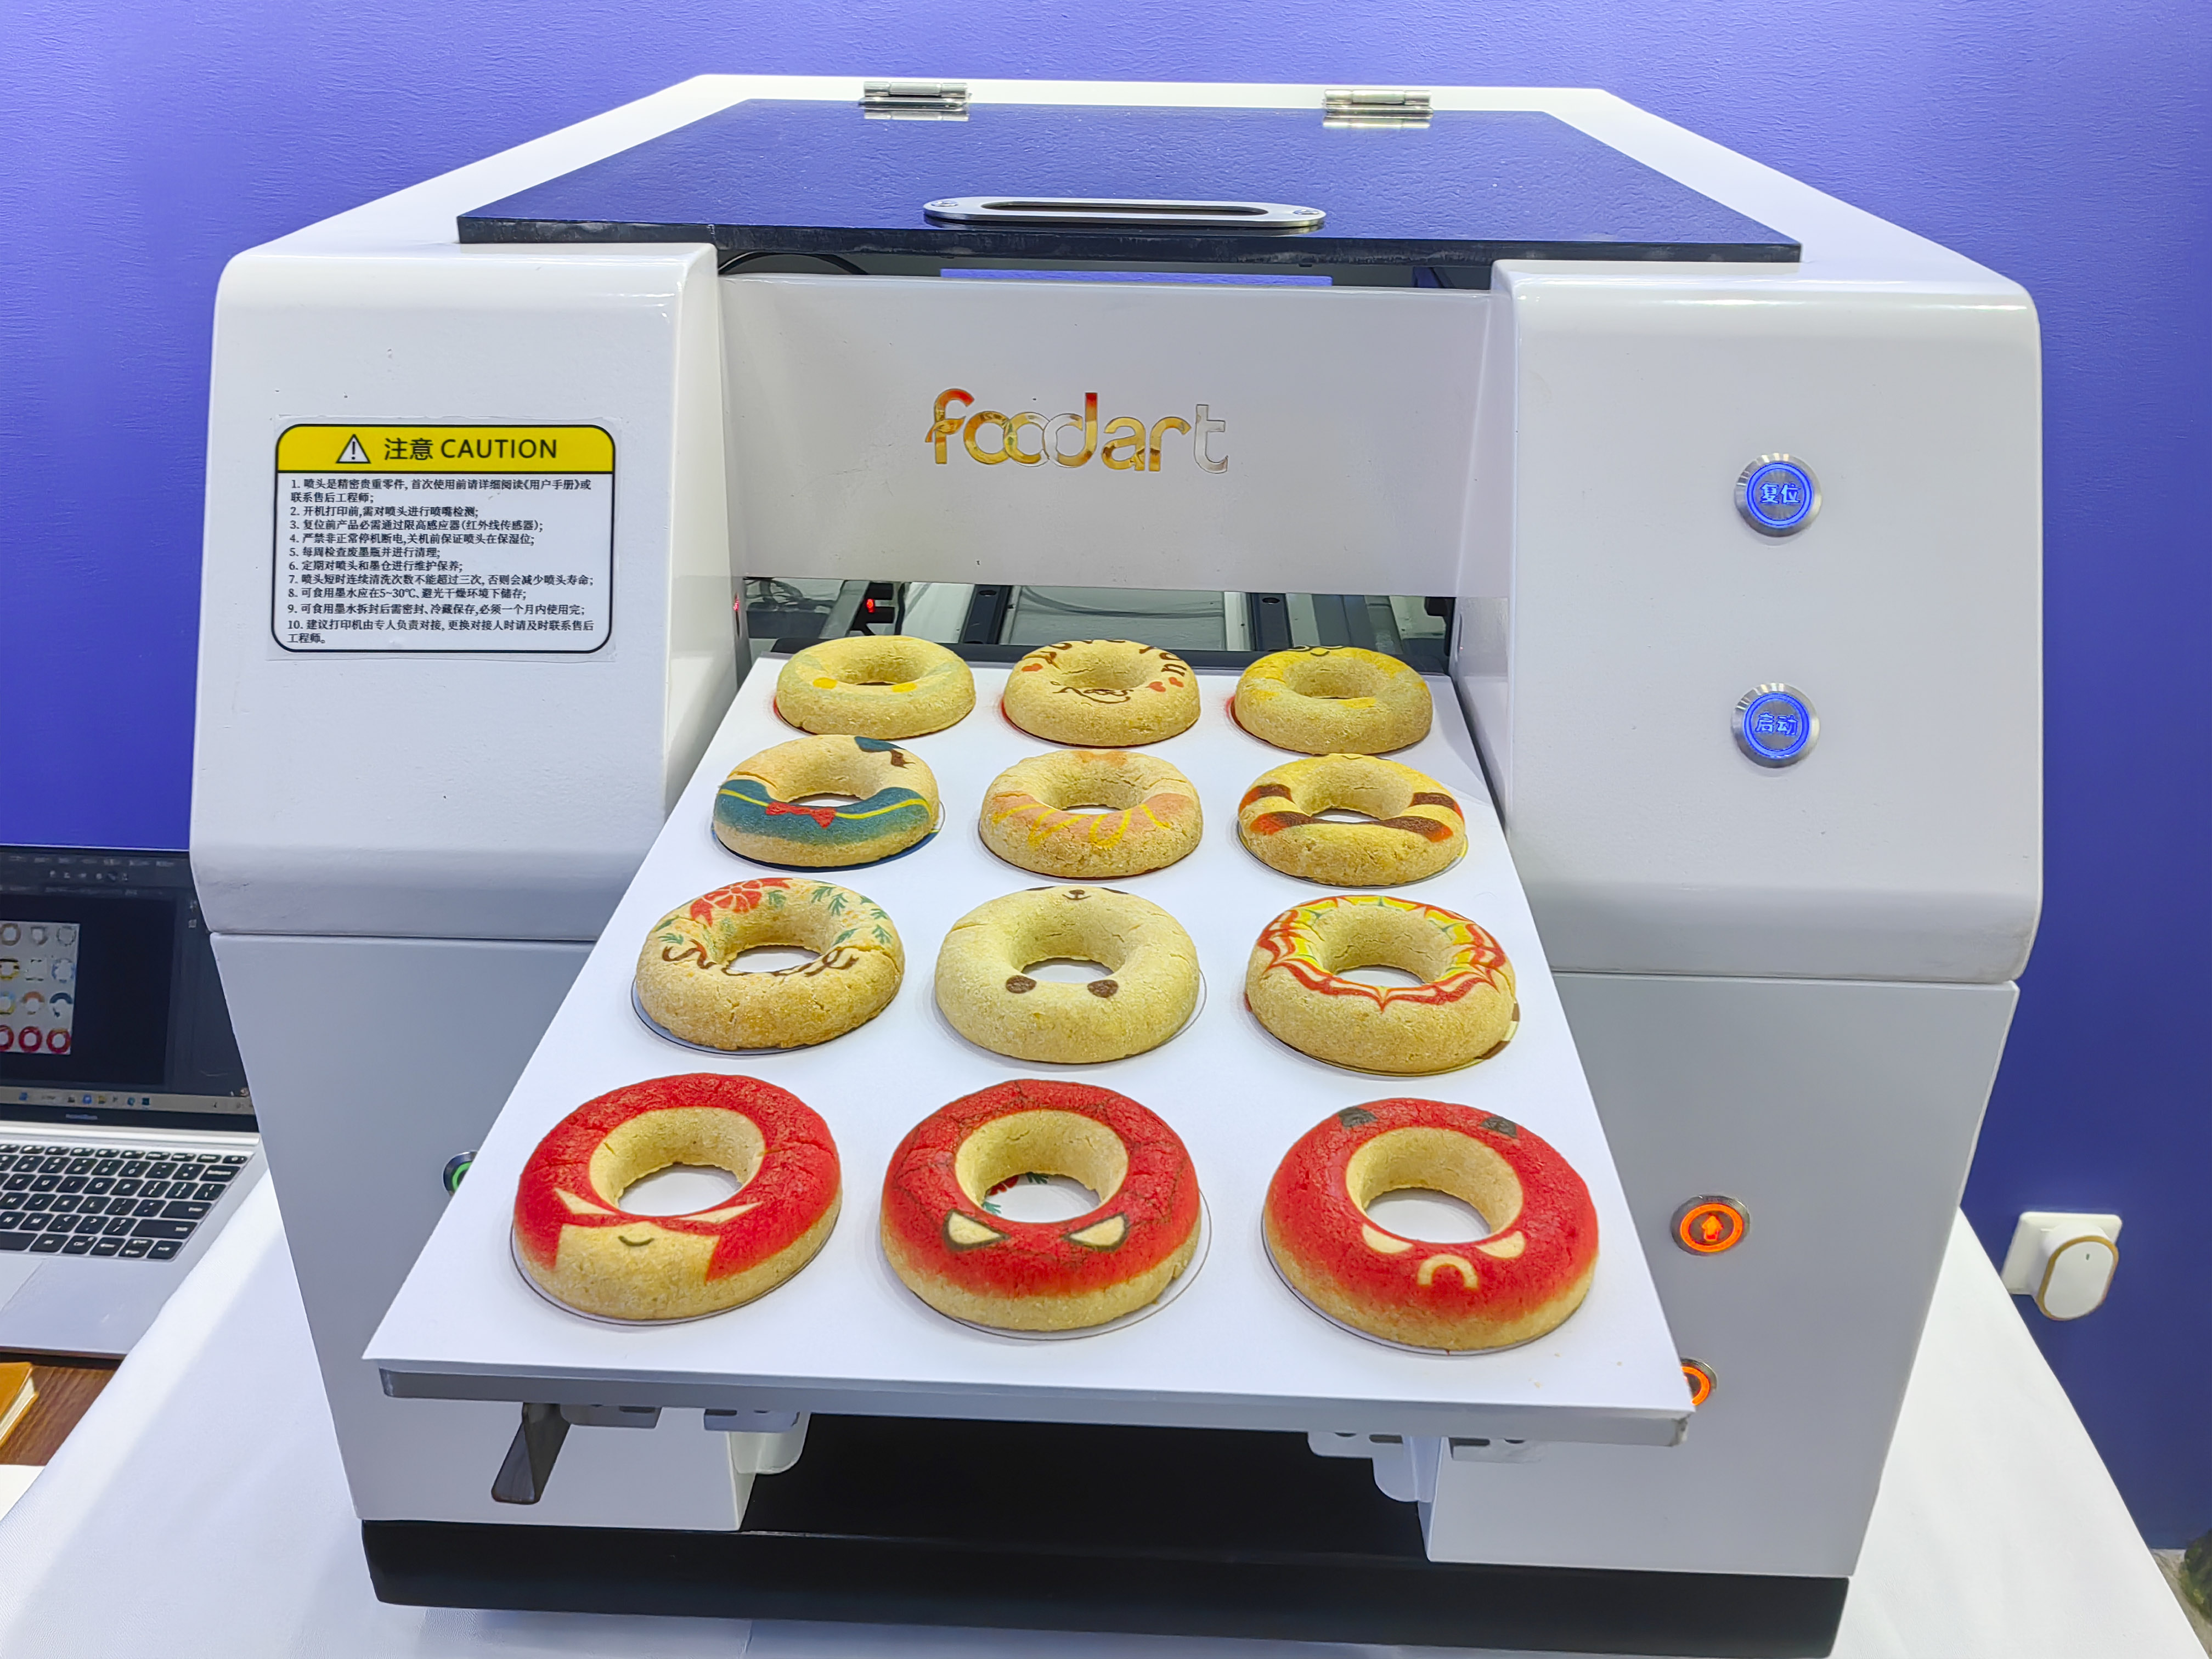 تكنولوجيا طباعة الأغذية آلة طباعة الطعام الجديدة لطباعة البسكويت الإبداعي ، بحيث يمكنك رؤية الدائرة